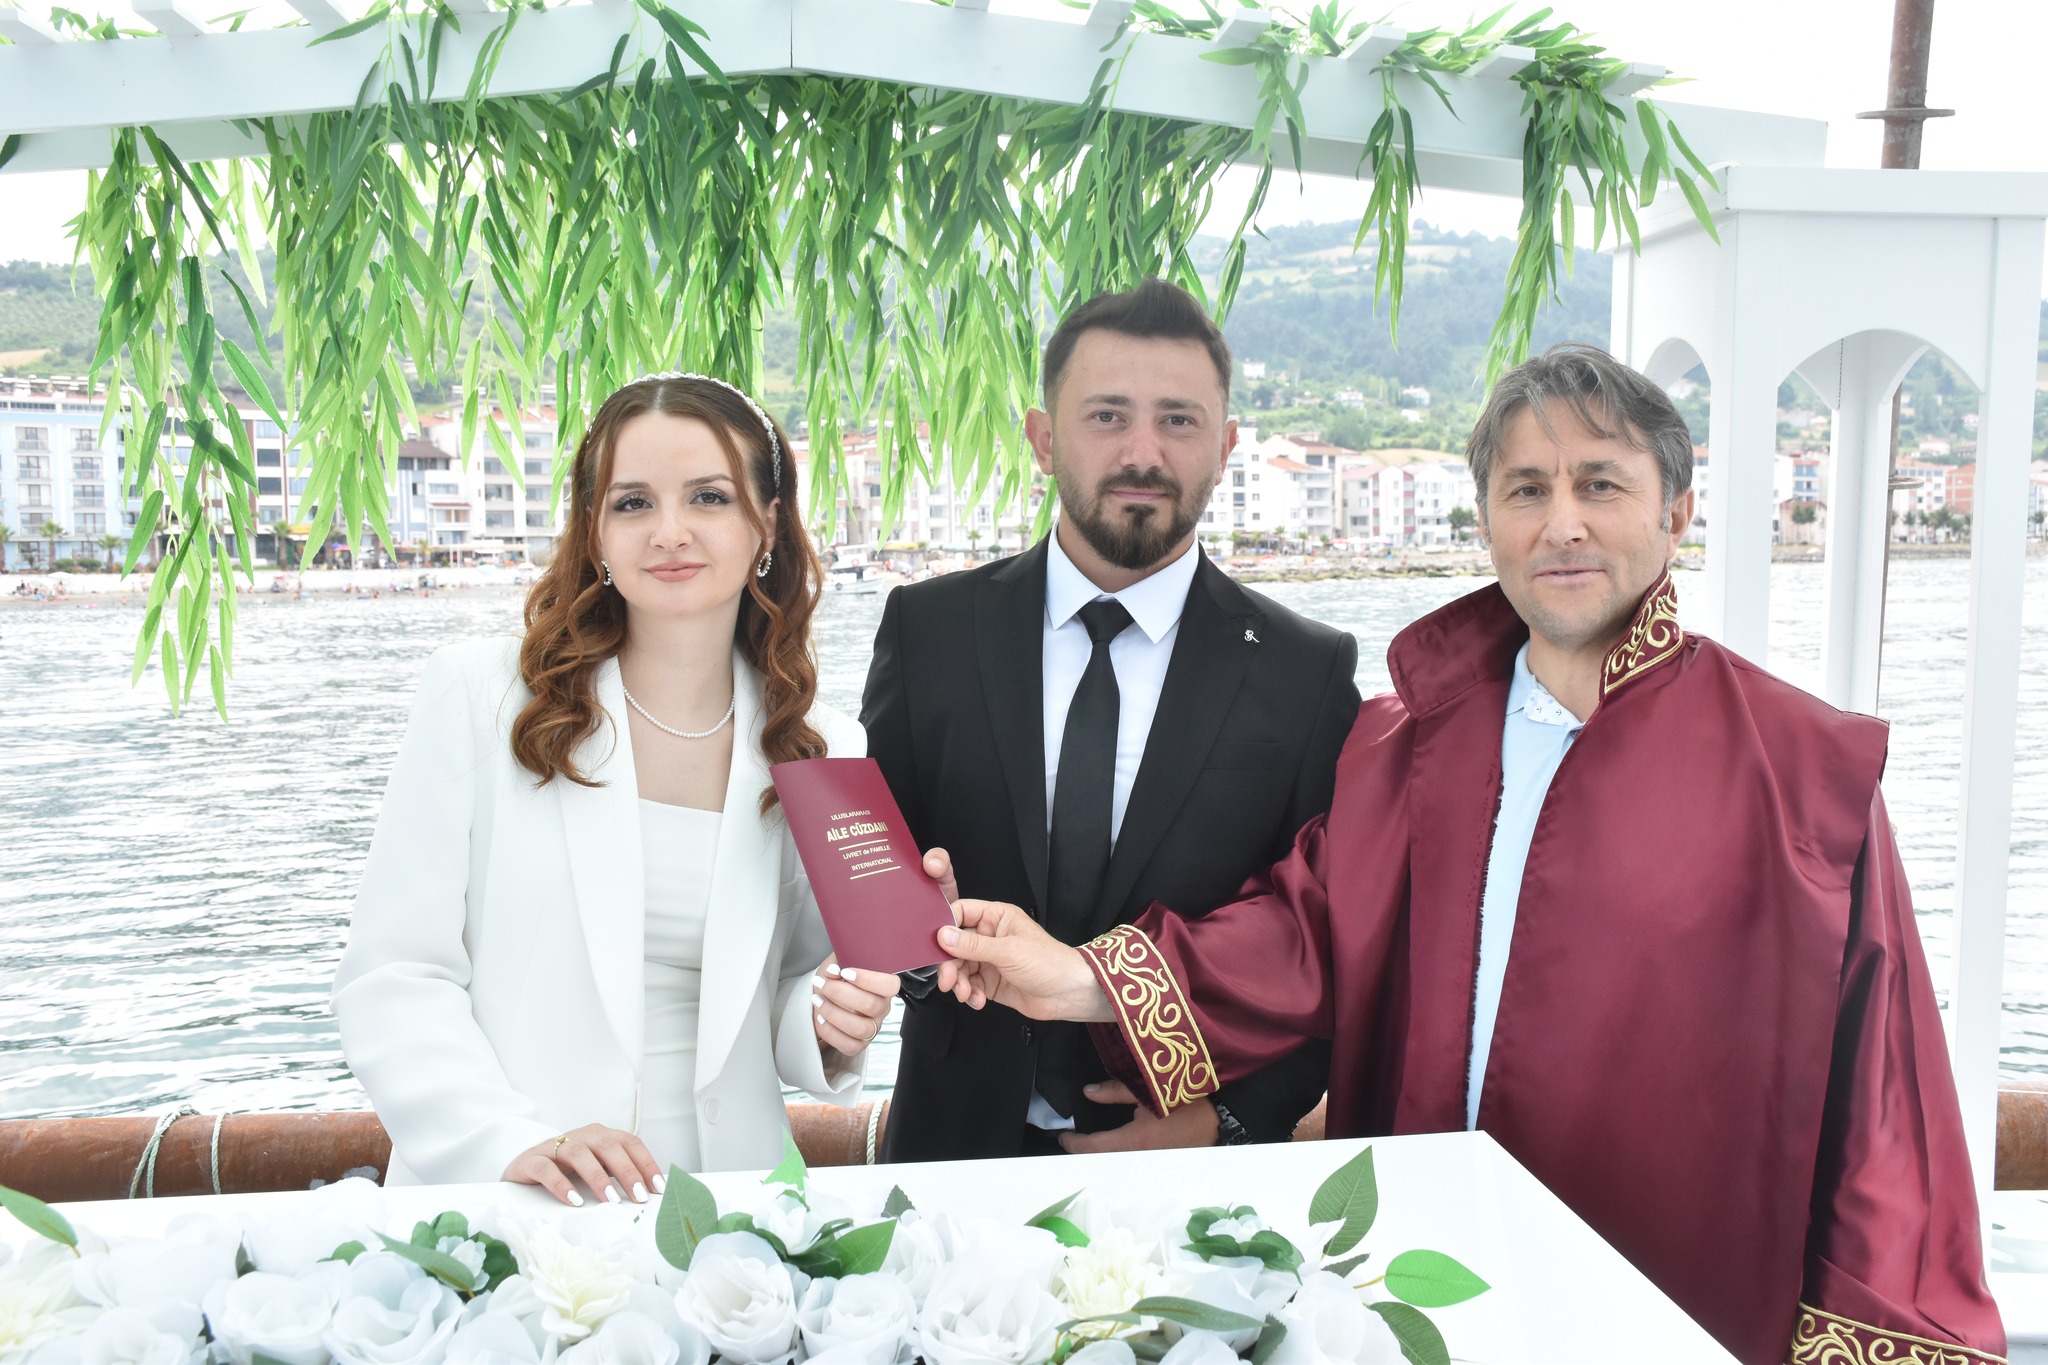 Belediye Başkanımız Hüseyin Kıyma, Tıngır ve Şensoy ailelerinin evlatları Derya & Emre çiftinin nikah akdini gerçekleştirdi.